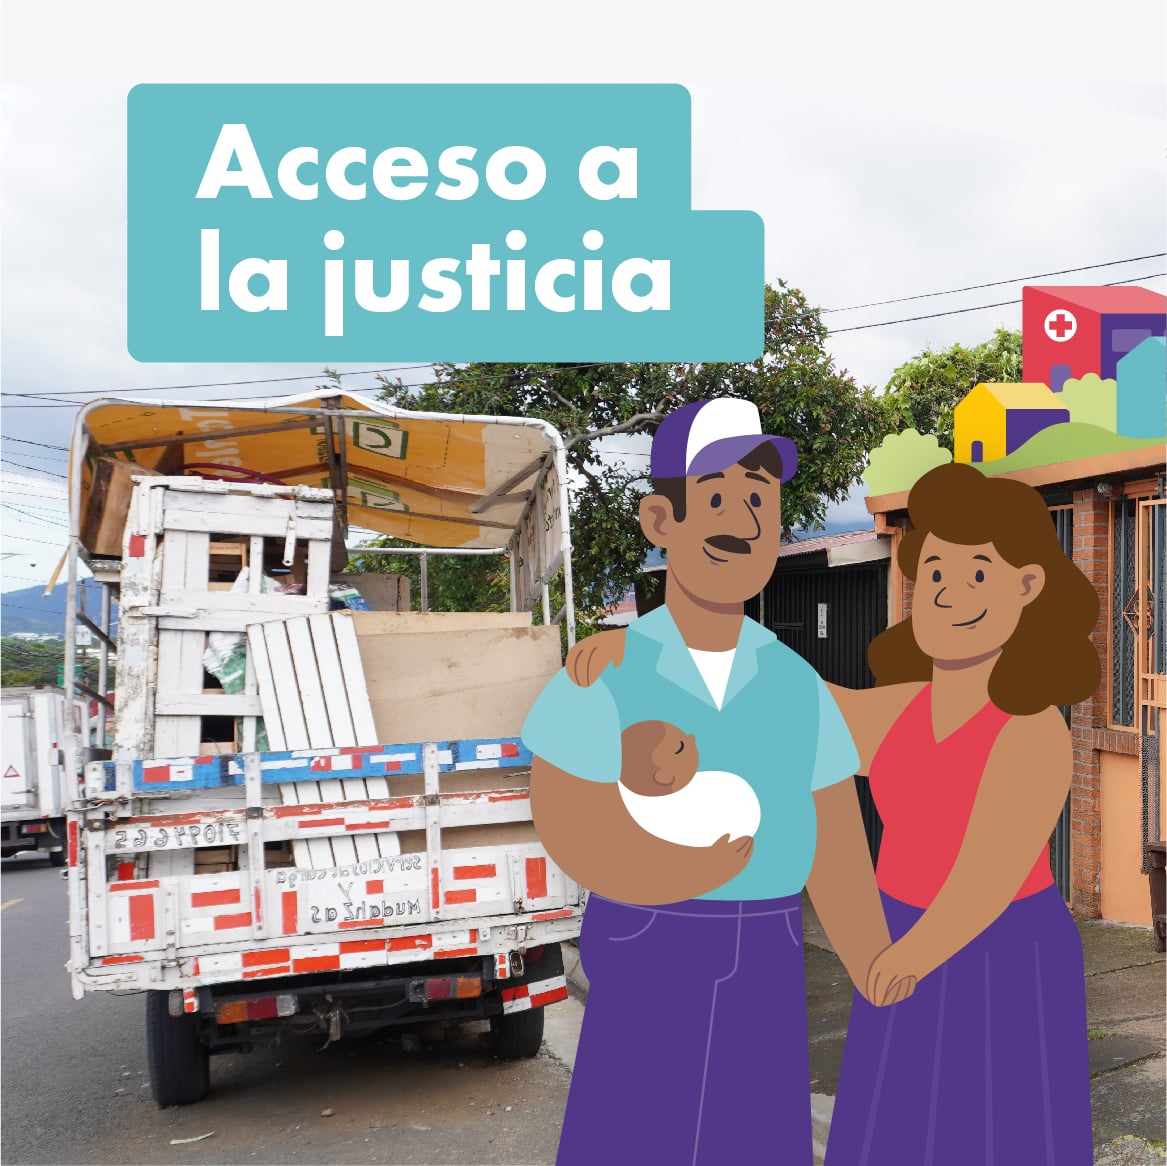 Ilustración de un hombre y una mujer, con la leyenda 'Acceso a la justicia'. Están en una calle, sonriendo, cargando una persona menor de edad.